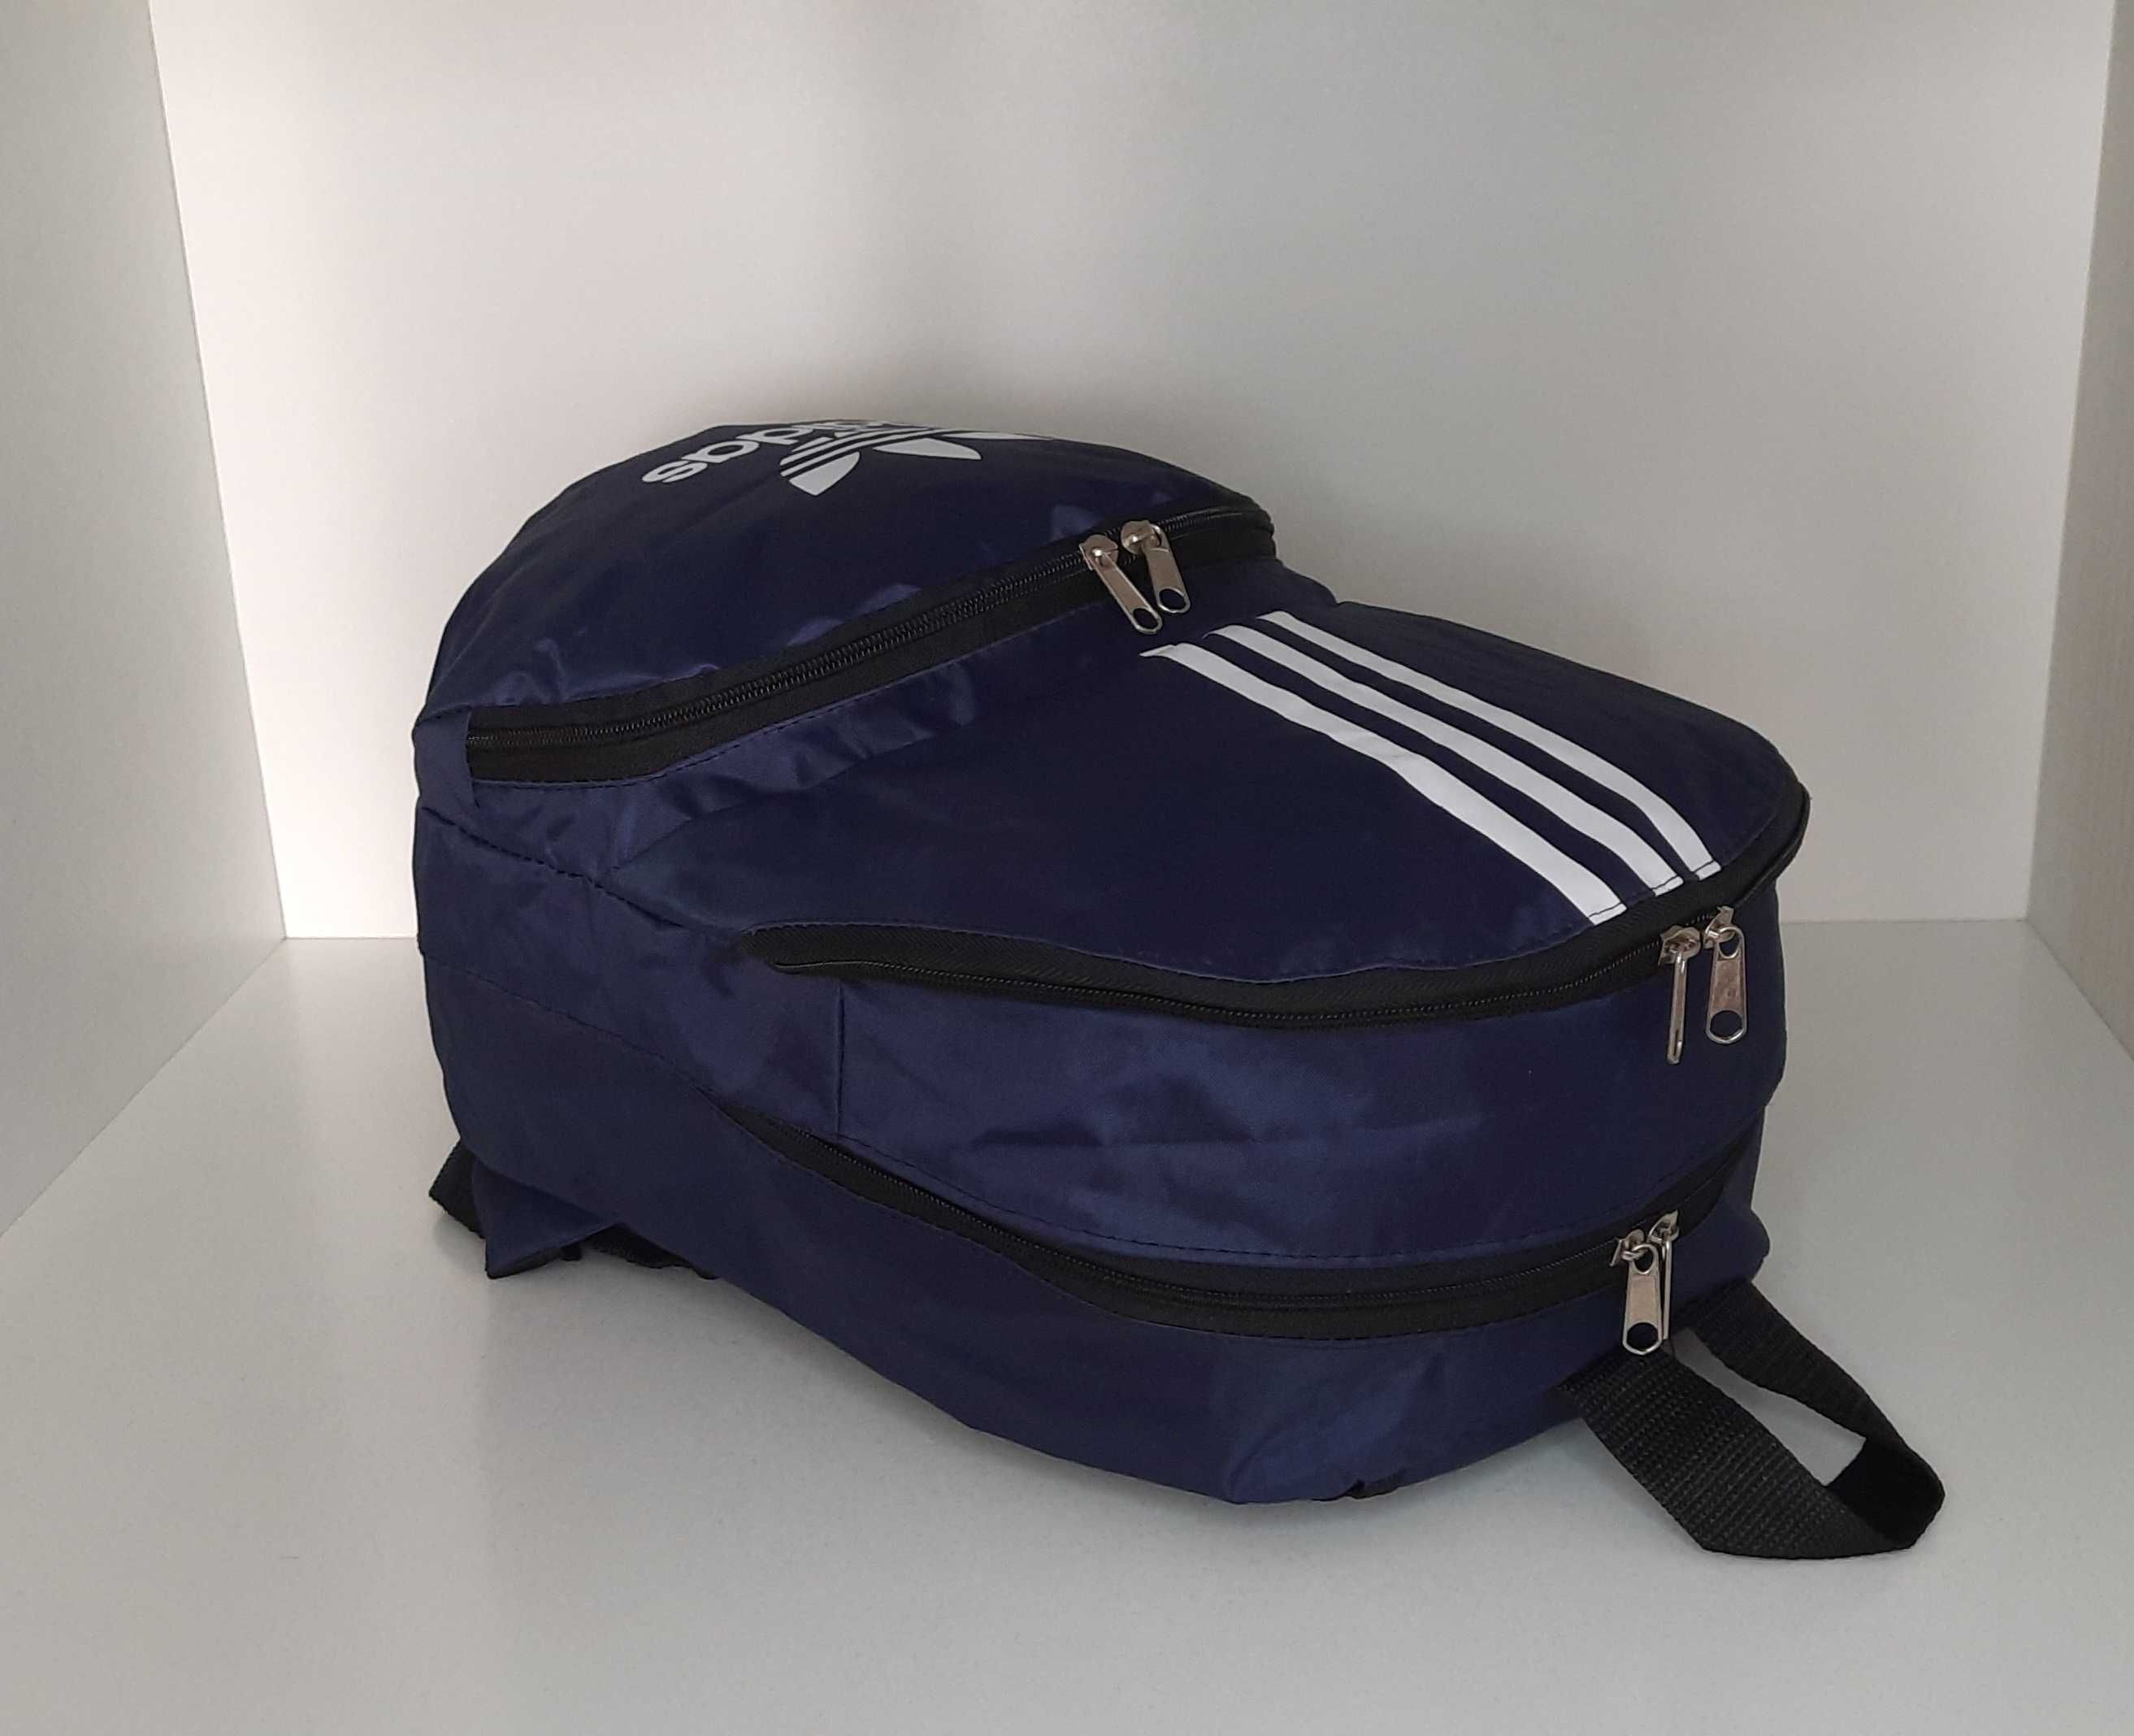 Спортивный рюкзак Adidas. Цвет тёмно синий. Новый.